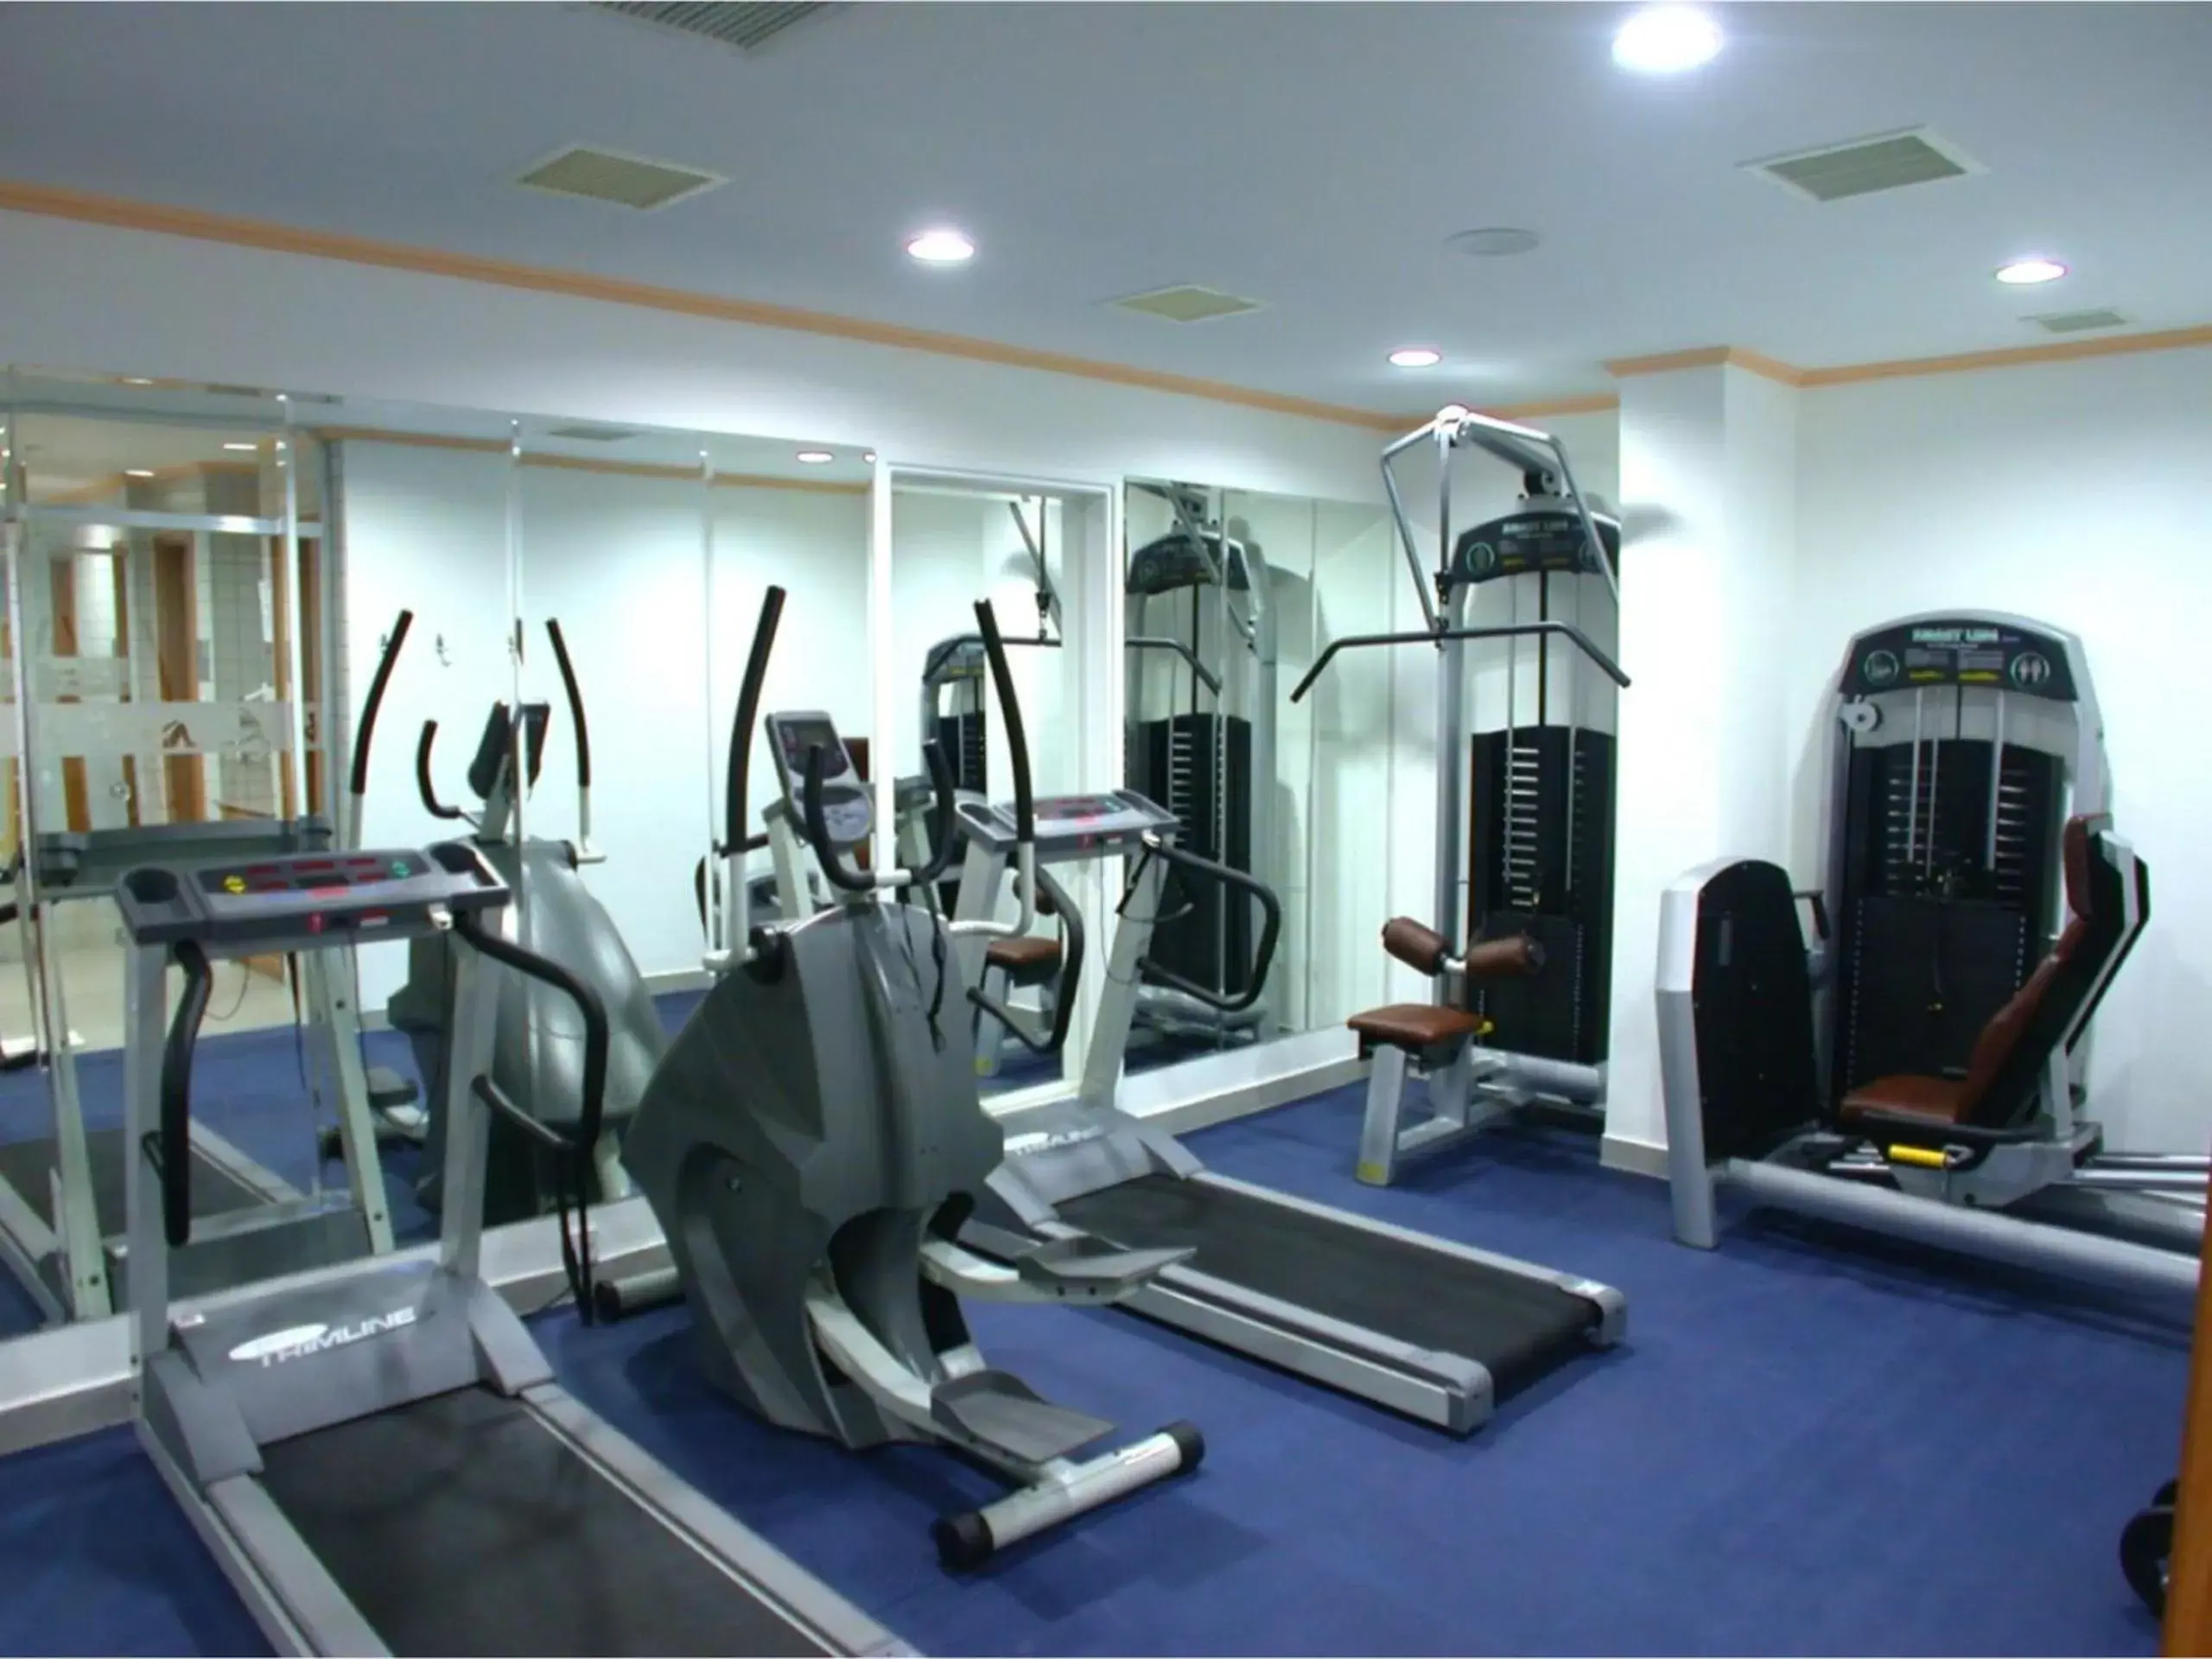 Fitness centre/facilities, Fitness Center/Facilities in Denizkizi Hotel